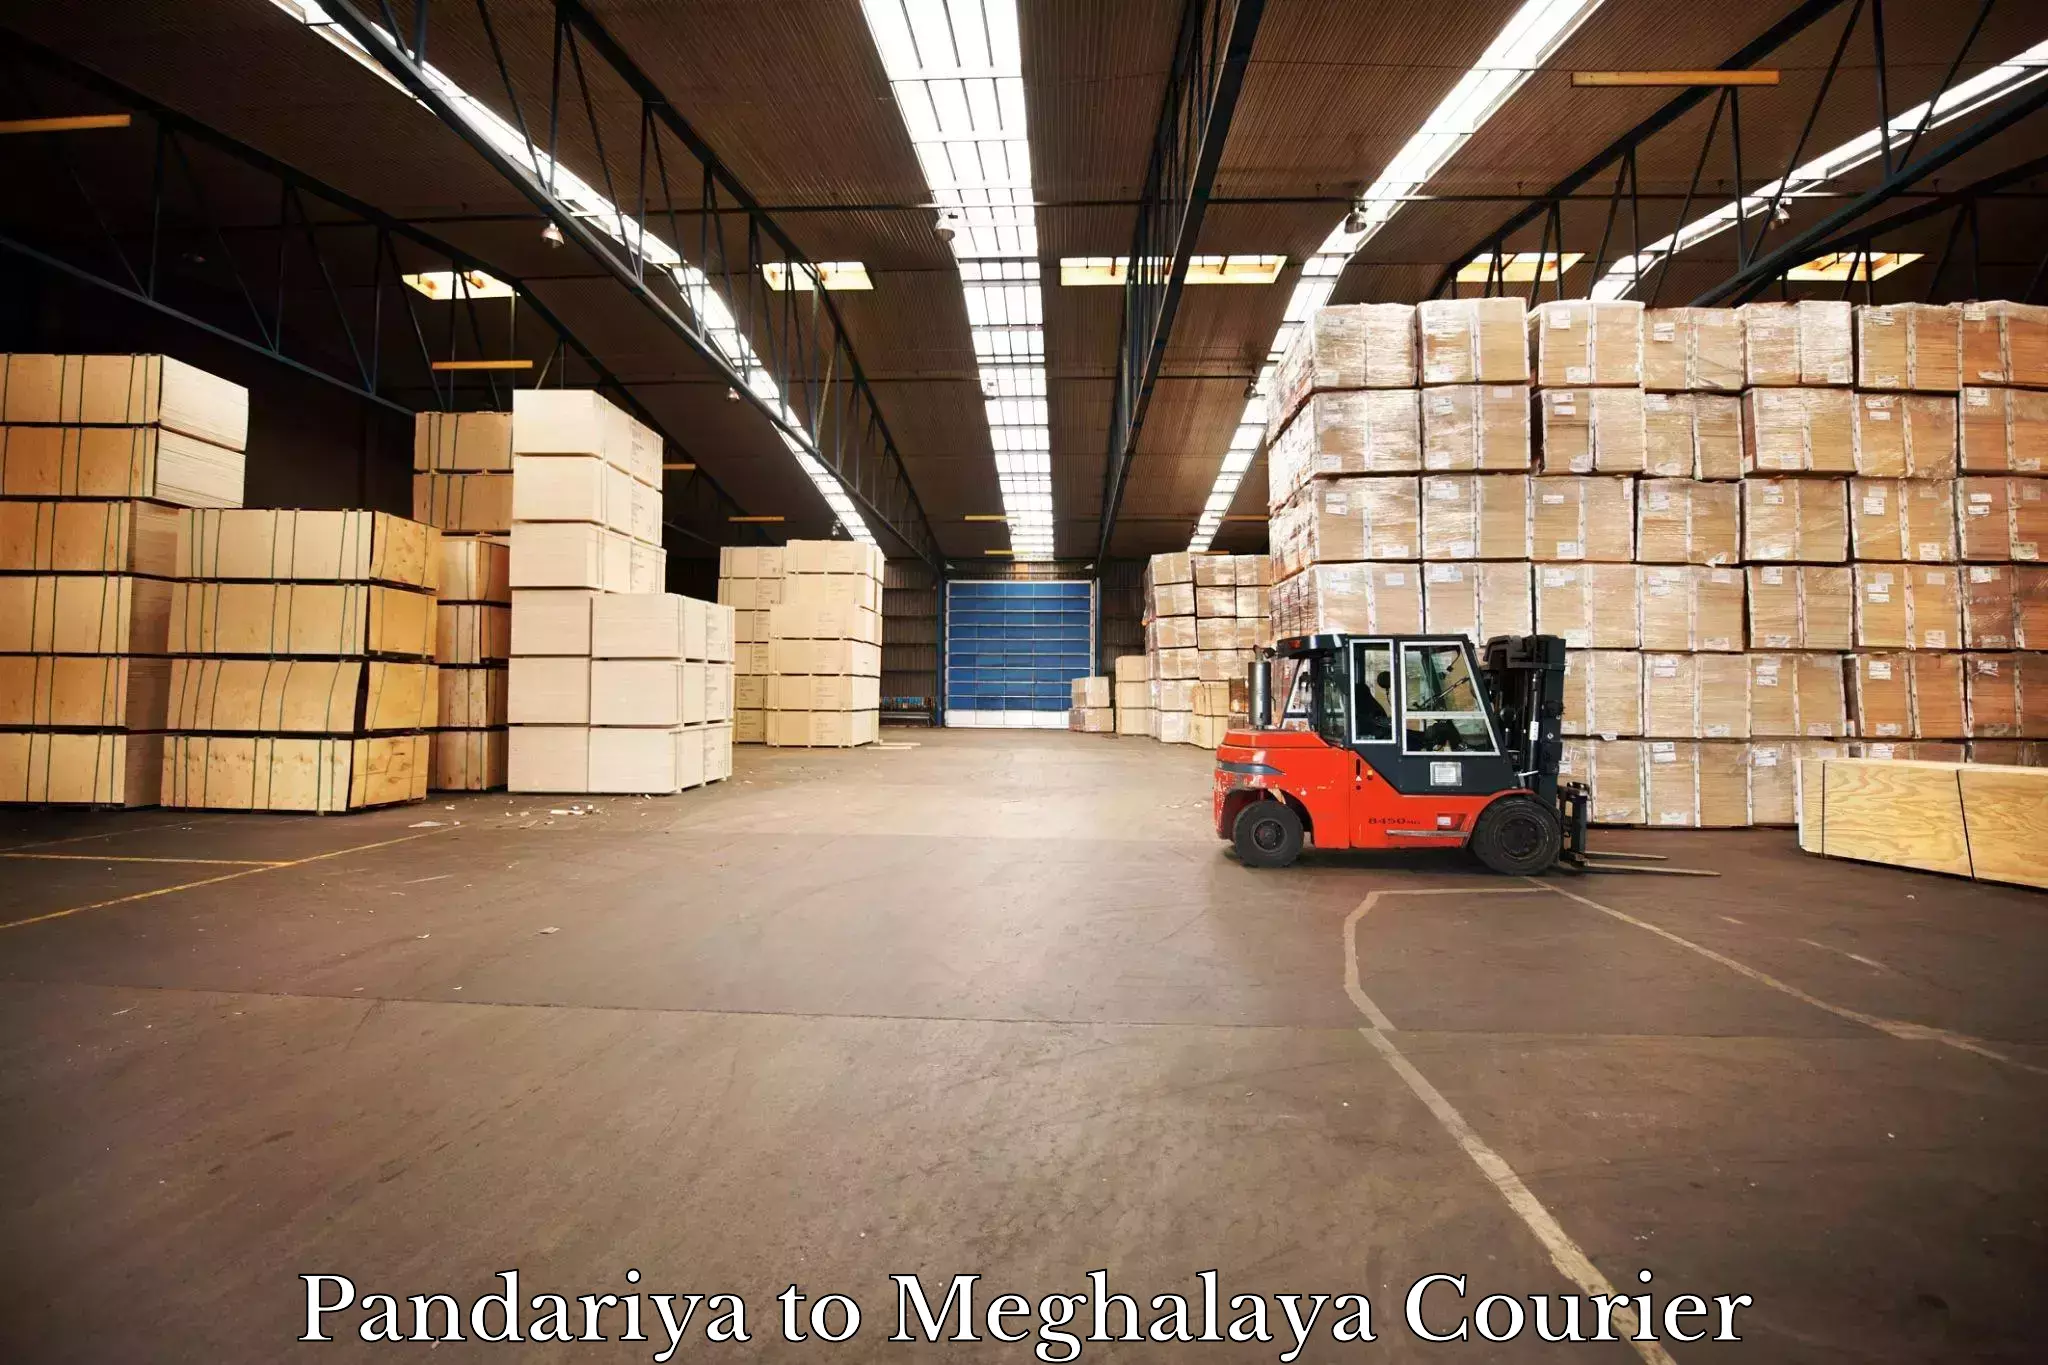 High-capacity courier solutions Pandariya to Shillong